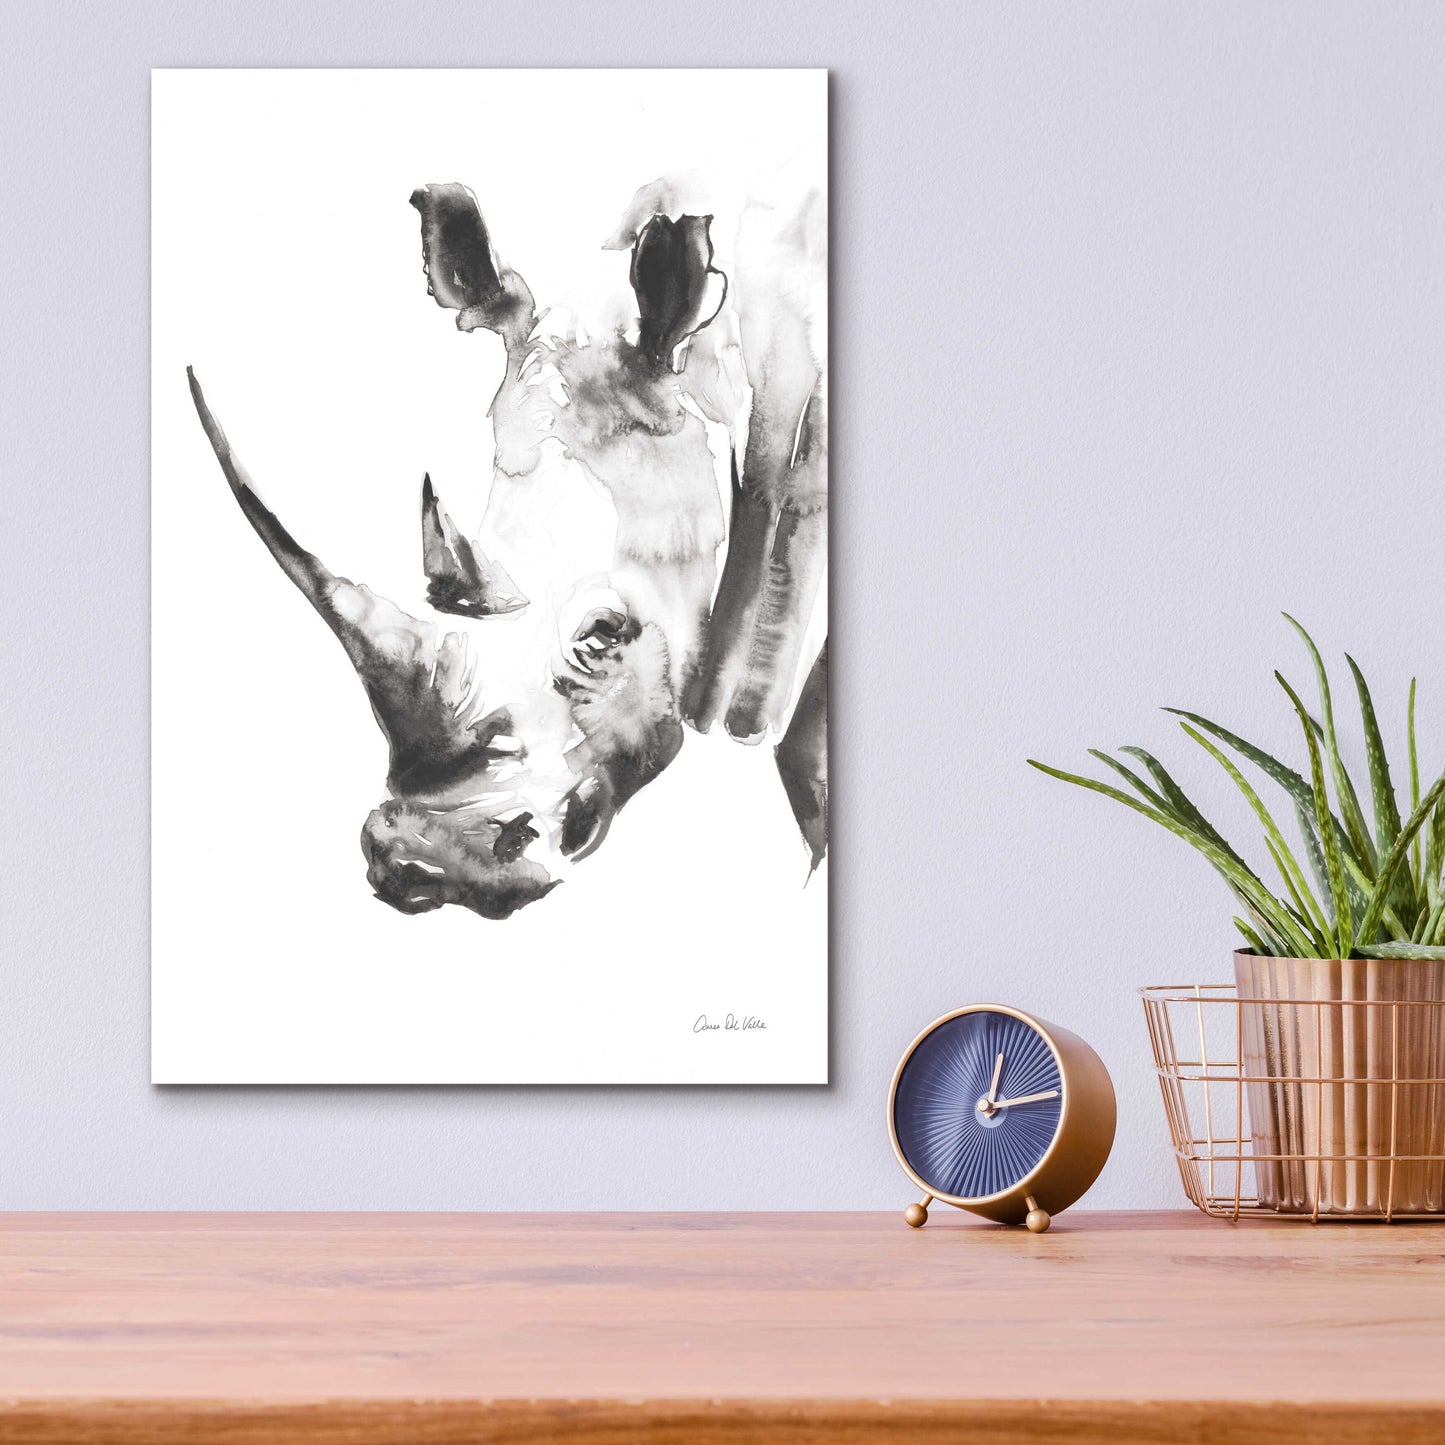 Epic Art 'Rhino Gray' by Alan Majchrowicz, Acrylic Glass Wall Art,12x16